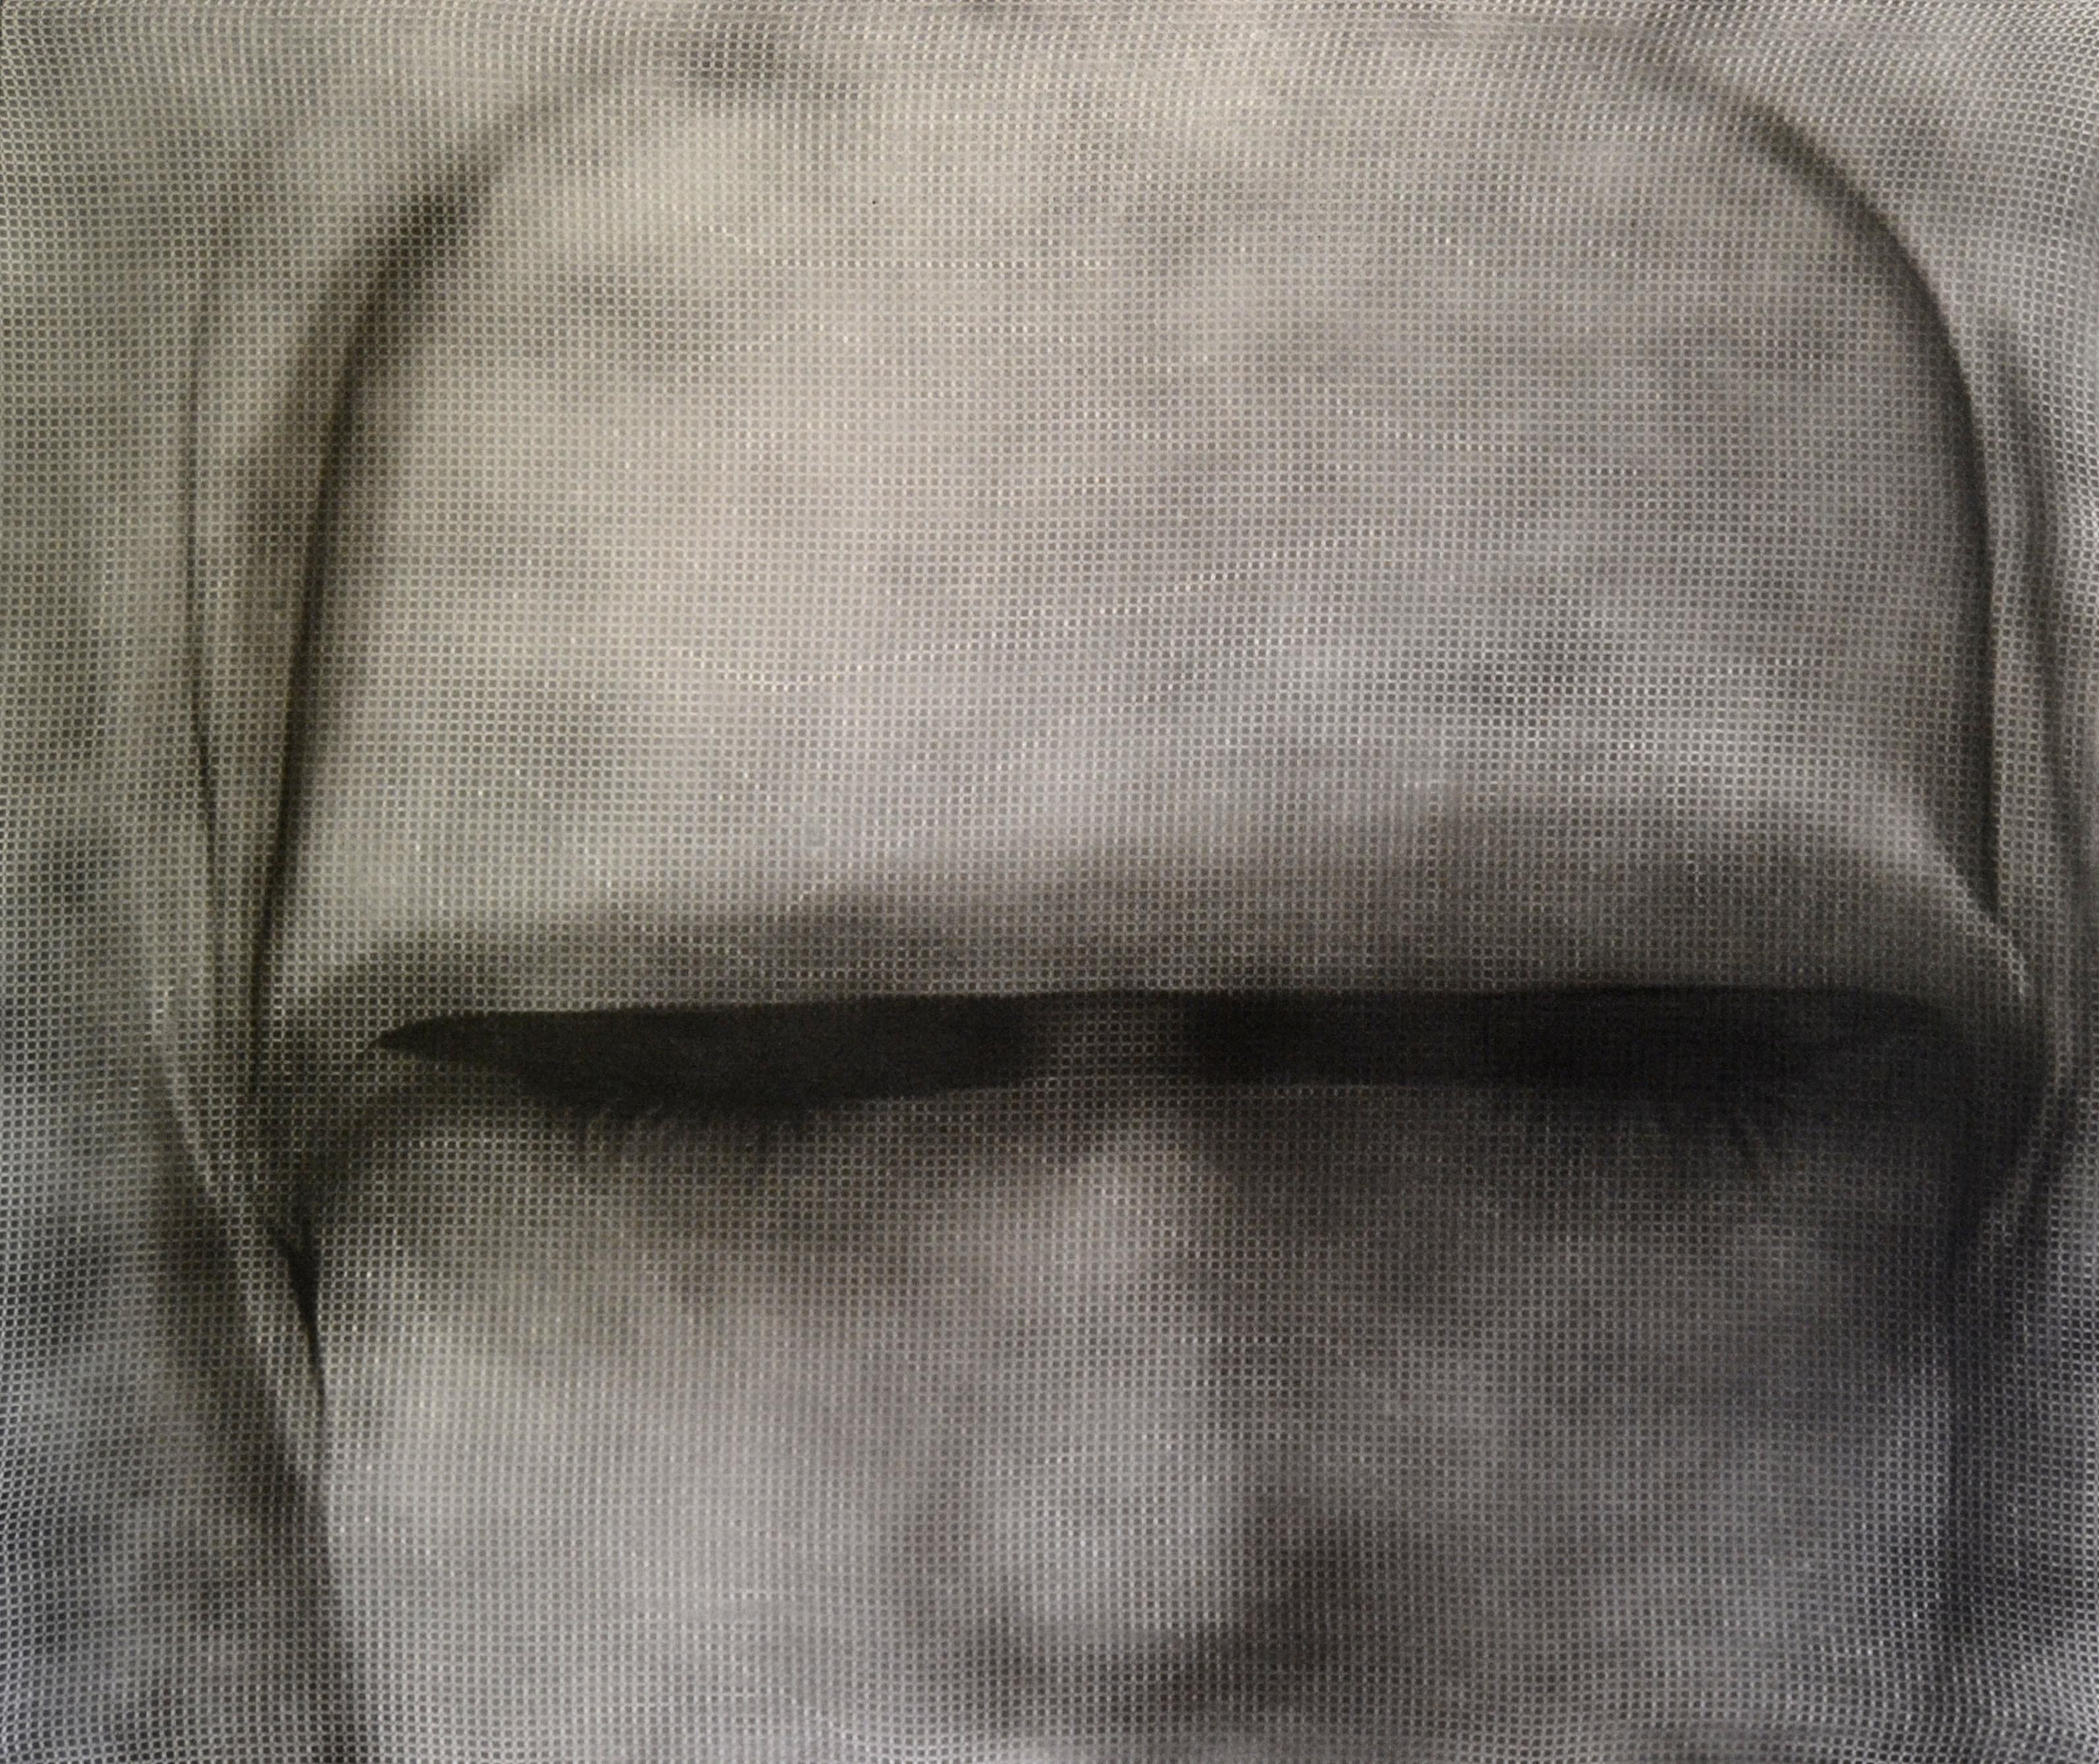  Kadının Adı Yok, 2013, Tuval üzerine akrilik- Acrylic on canvas, 126x150 cm.